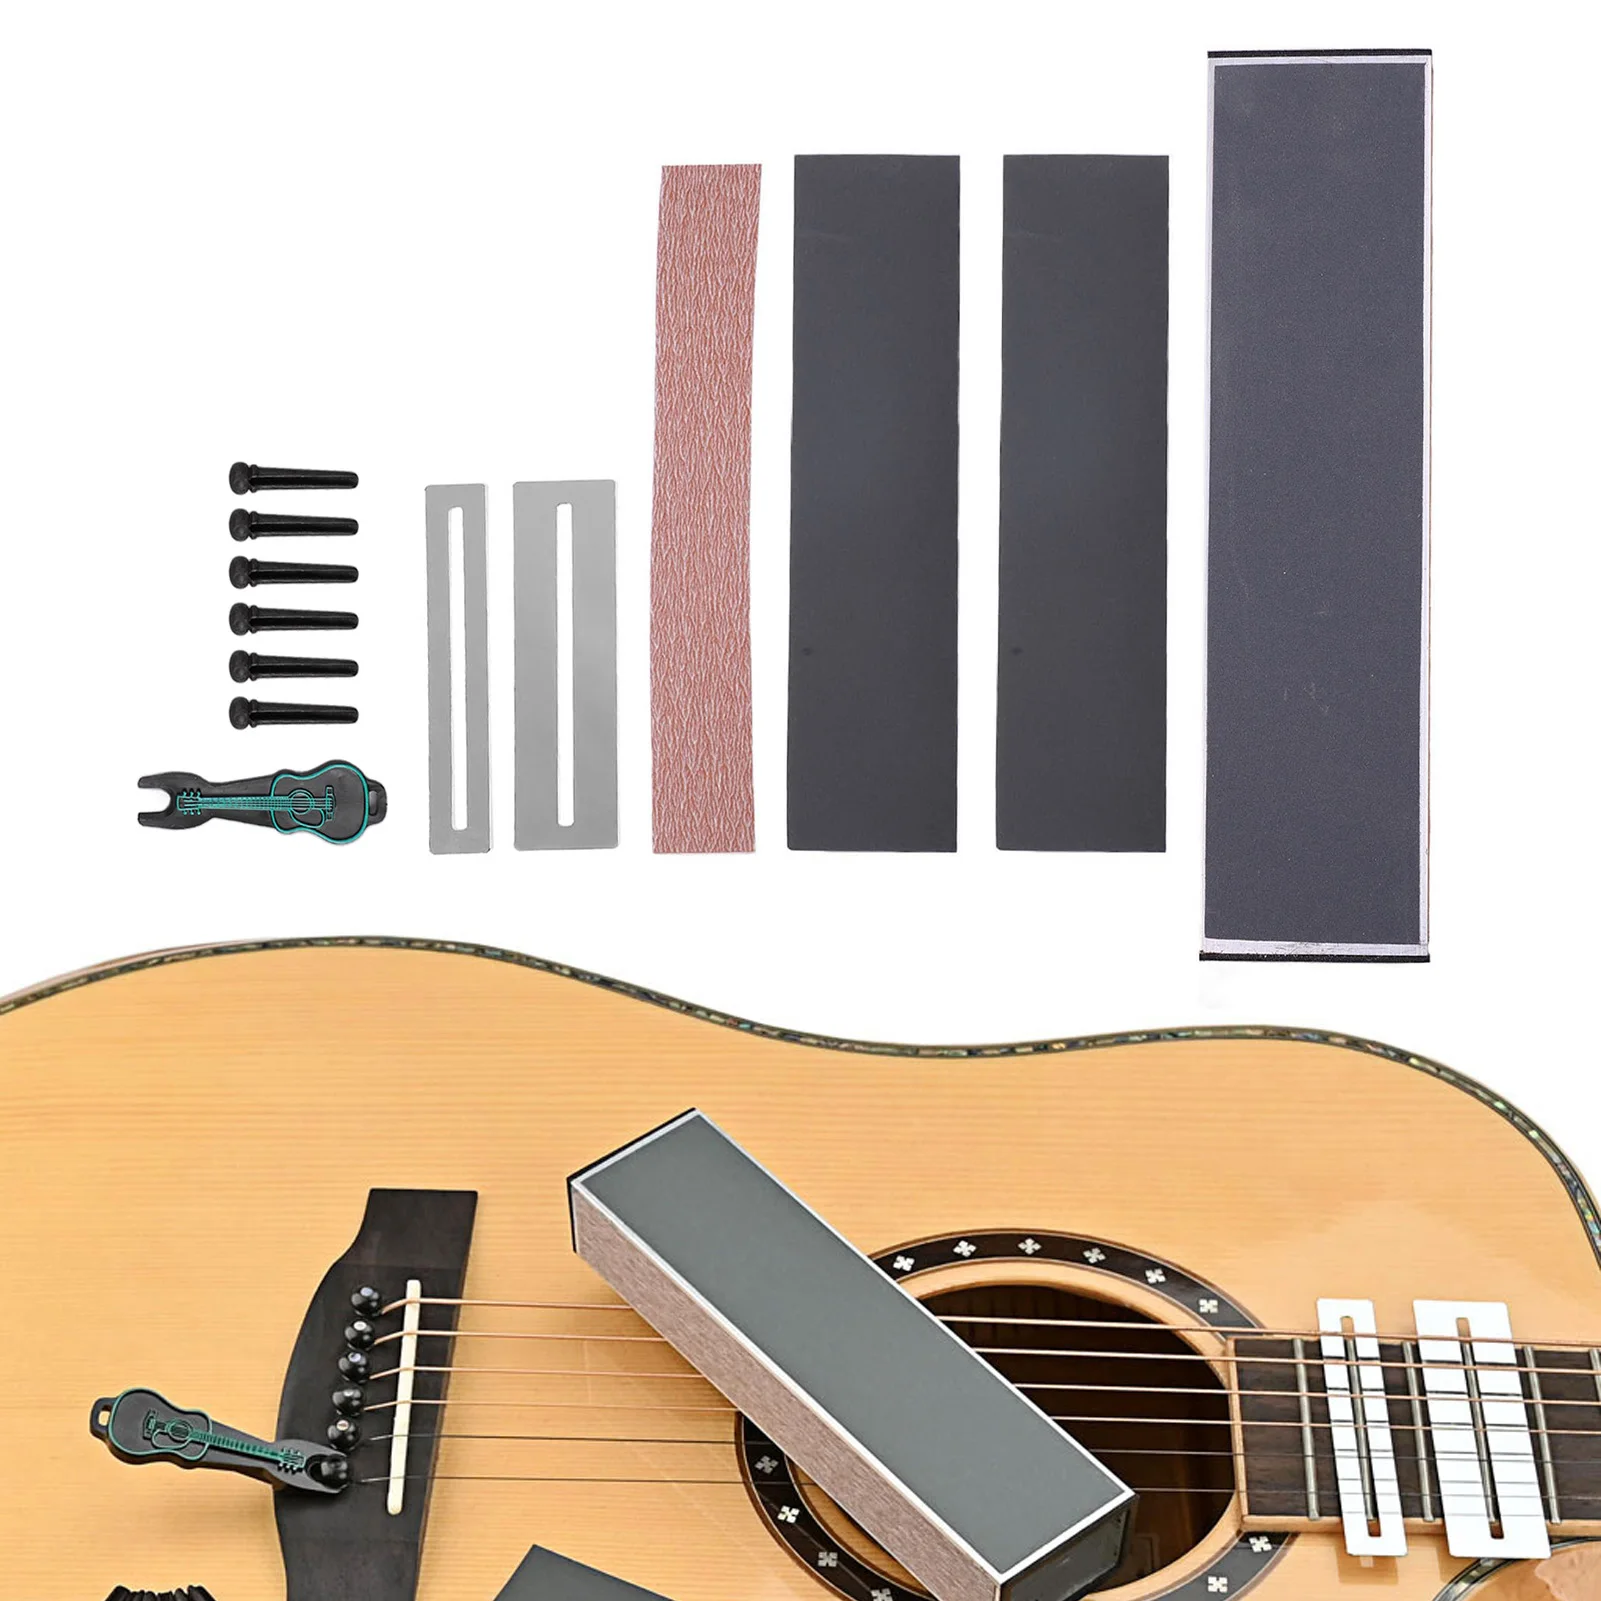 

Инструменты для полировки гитары, лад, прокладка, мост и съемник, шлифовальный лист, набор для выравнивания